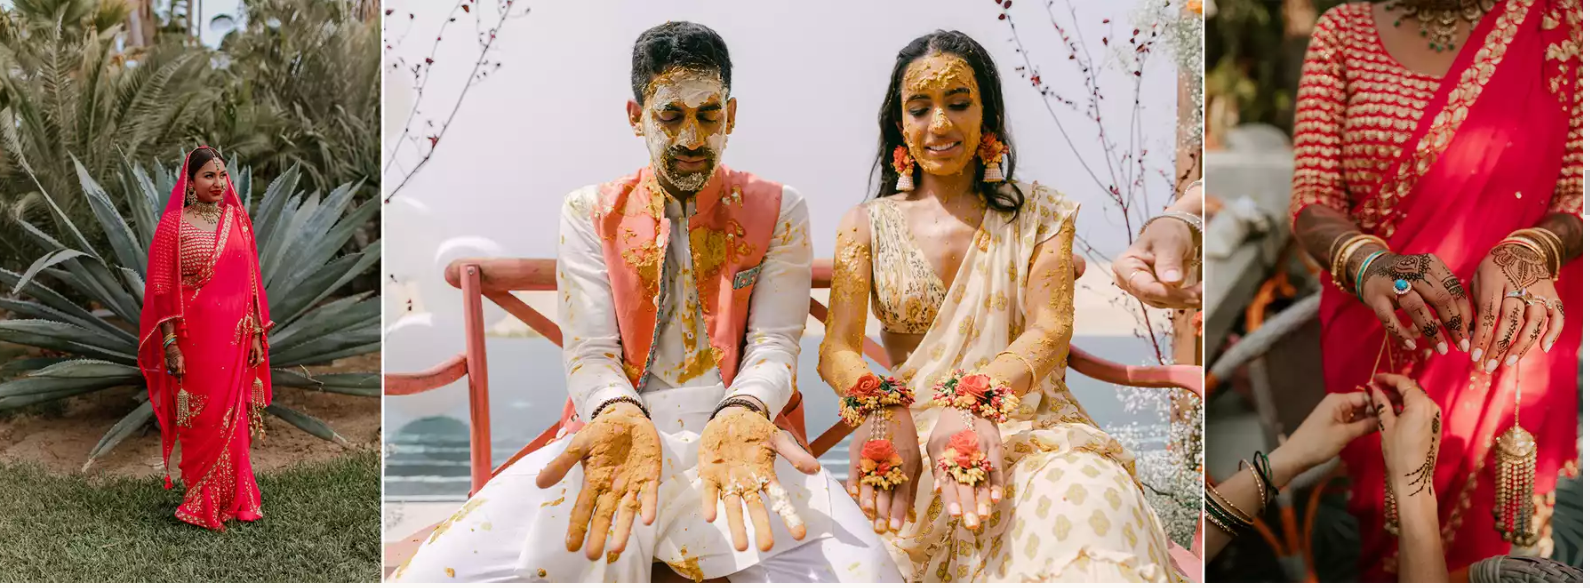 أشكال فستان الزفاف في الهند